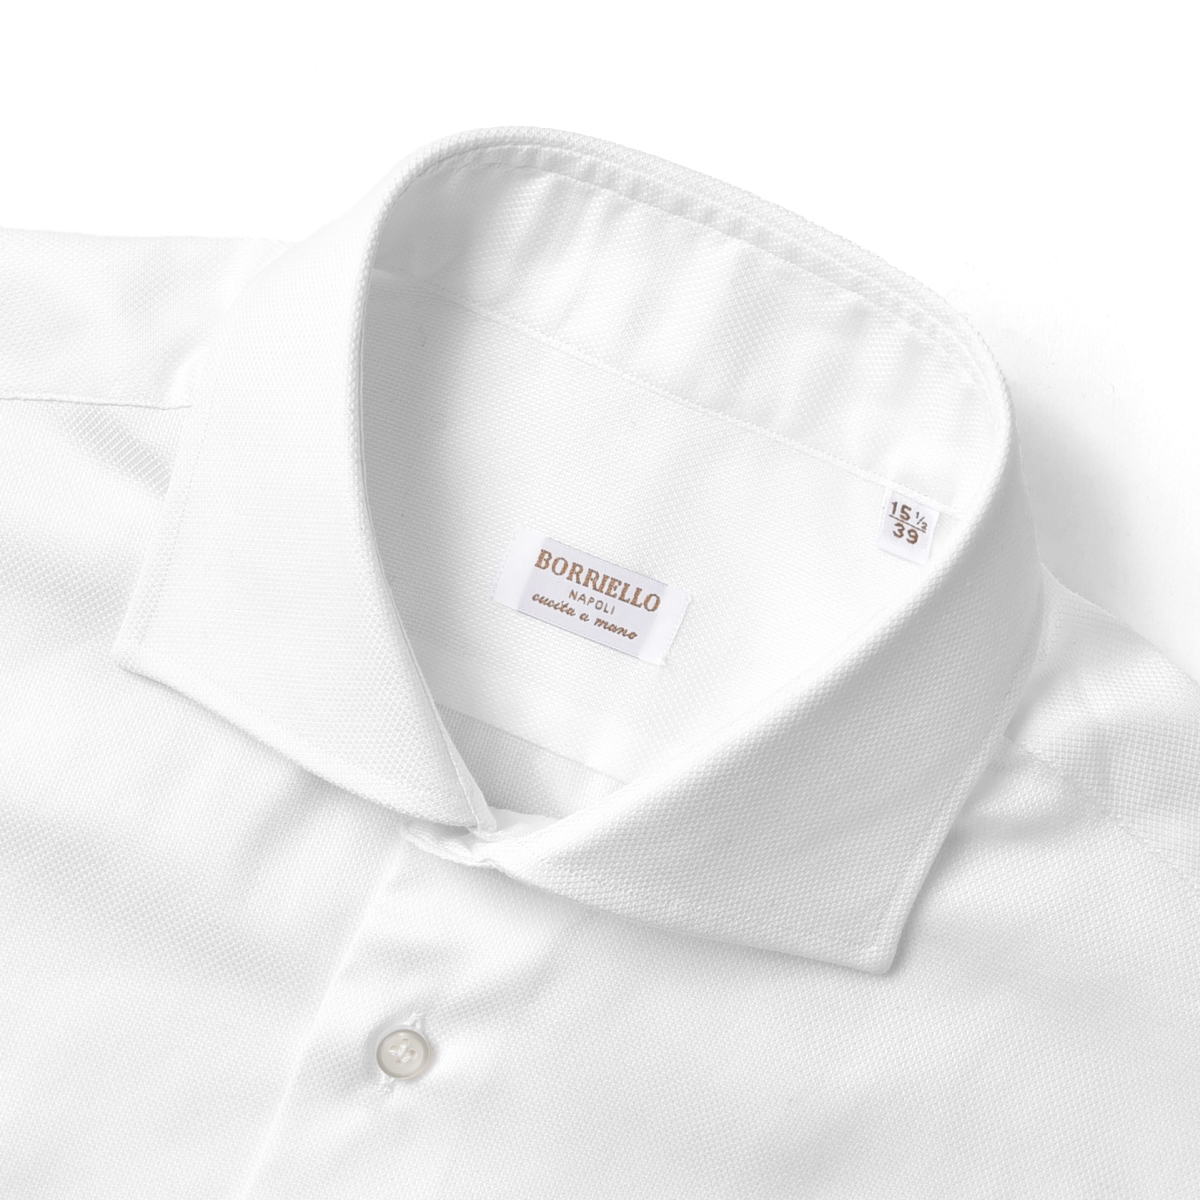 楽天市場】ボリエッロ BORRIELLO シャツ 4001-1 ホワイト 白 ロイヤル